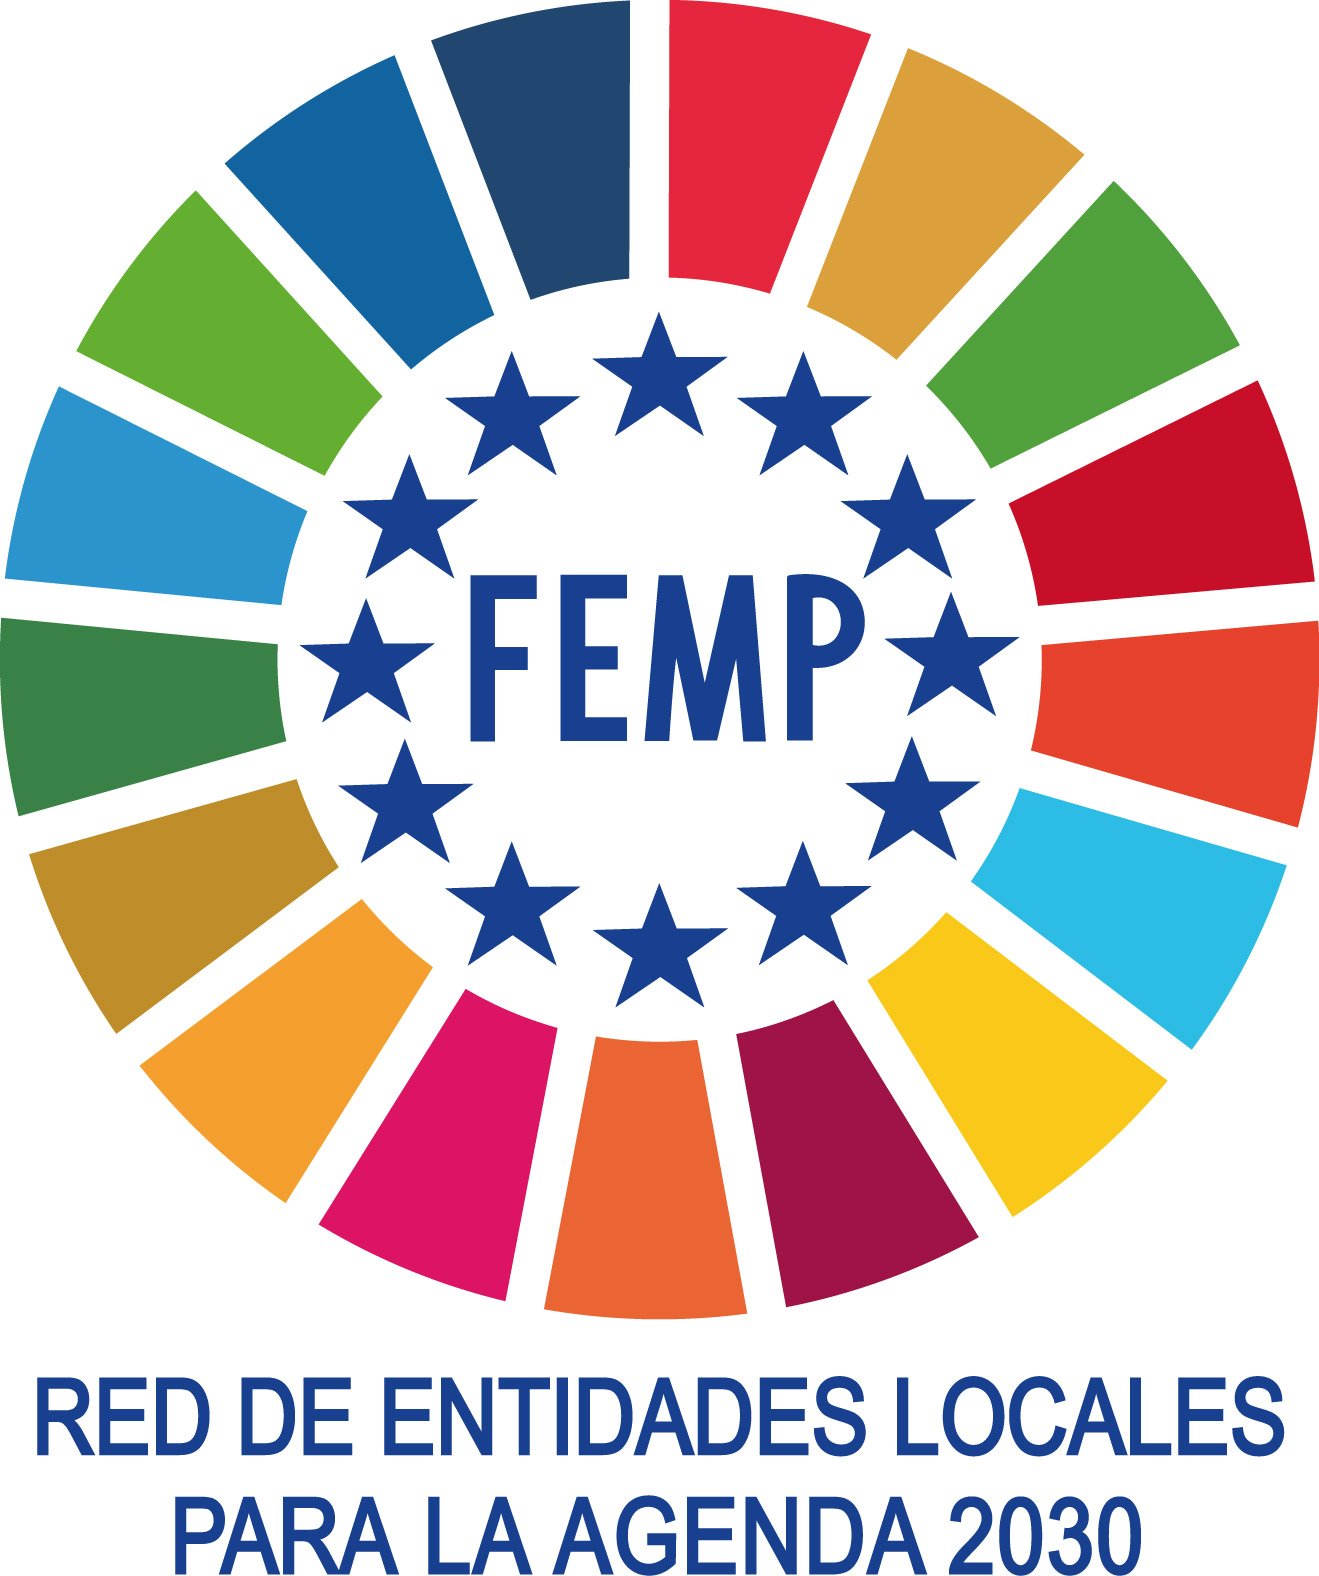 La Red de Entidades Locales para la Agenda 2030, en la que participa Pamplona, plantea nuevas acciones para continuar con la difusión municipal de la Estrategia de Desarrollo Sostenible